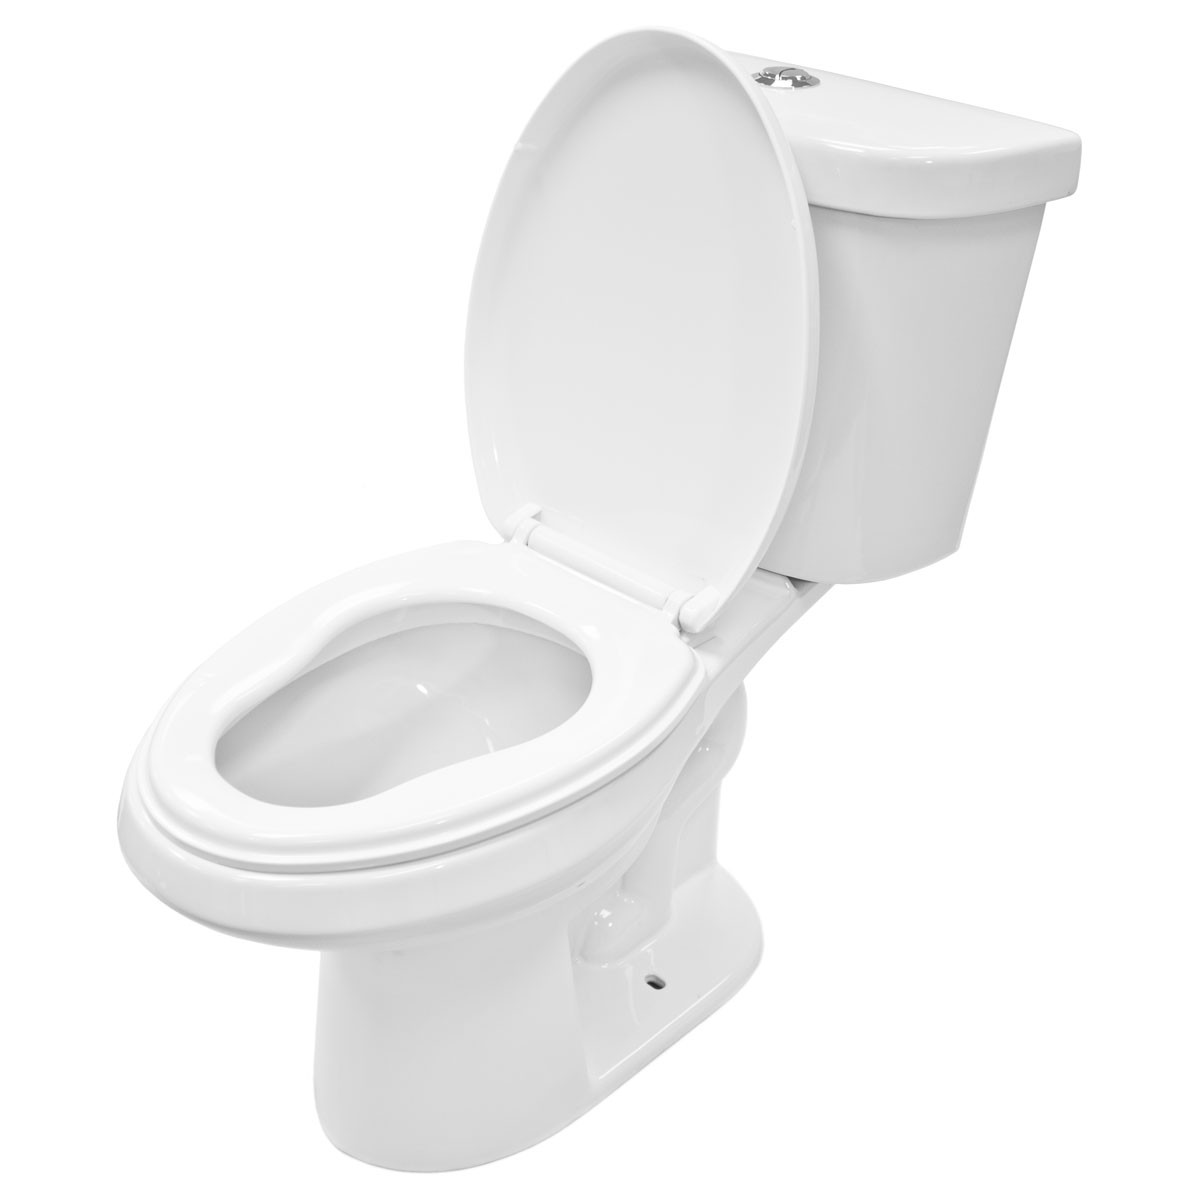 Lt1D Dual Flush Elongated Two Piece Ceramic Toilet   Toilet Hd Png - Toilet, Transparent background PNG HD thumbnail